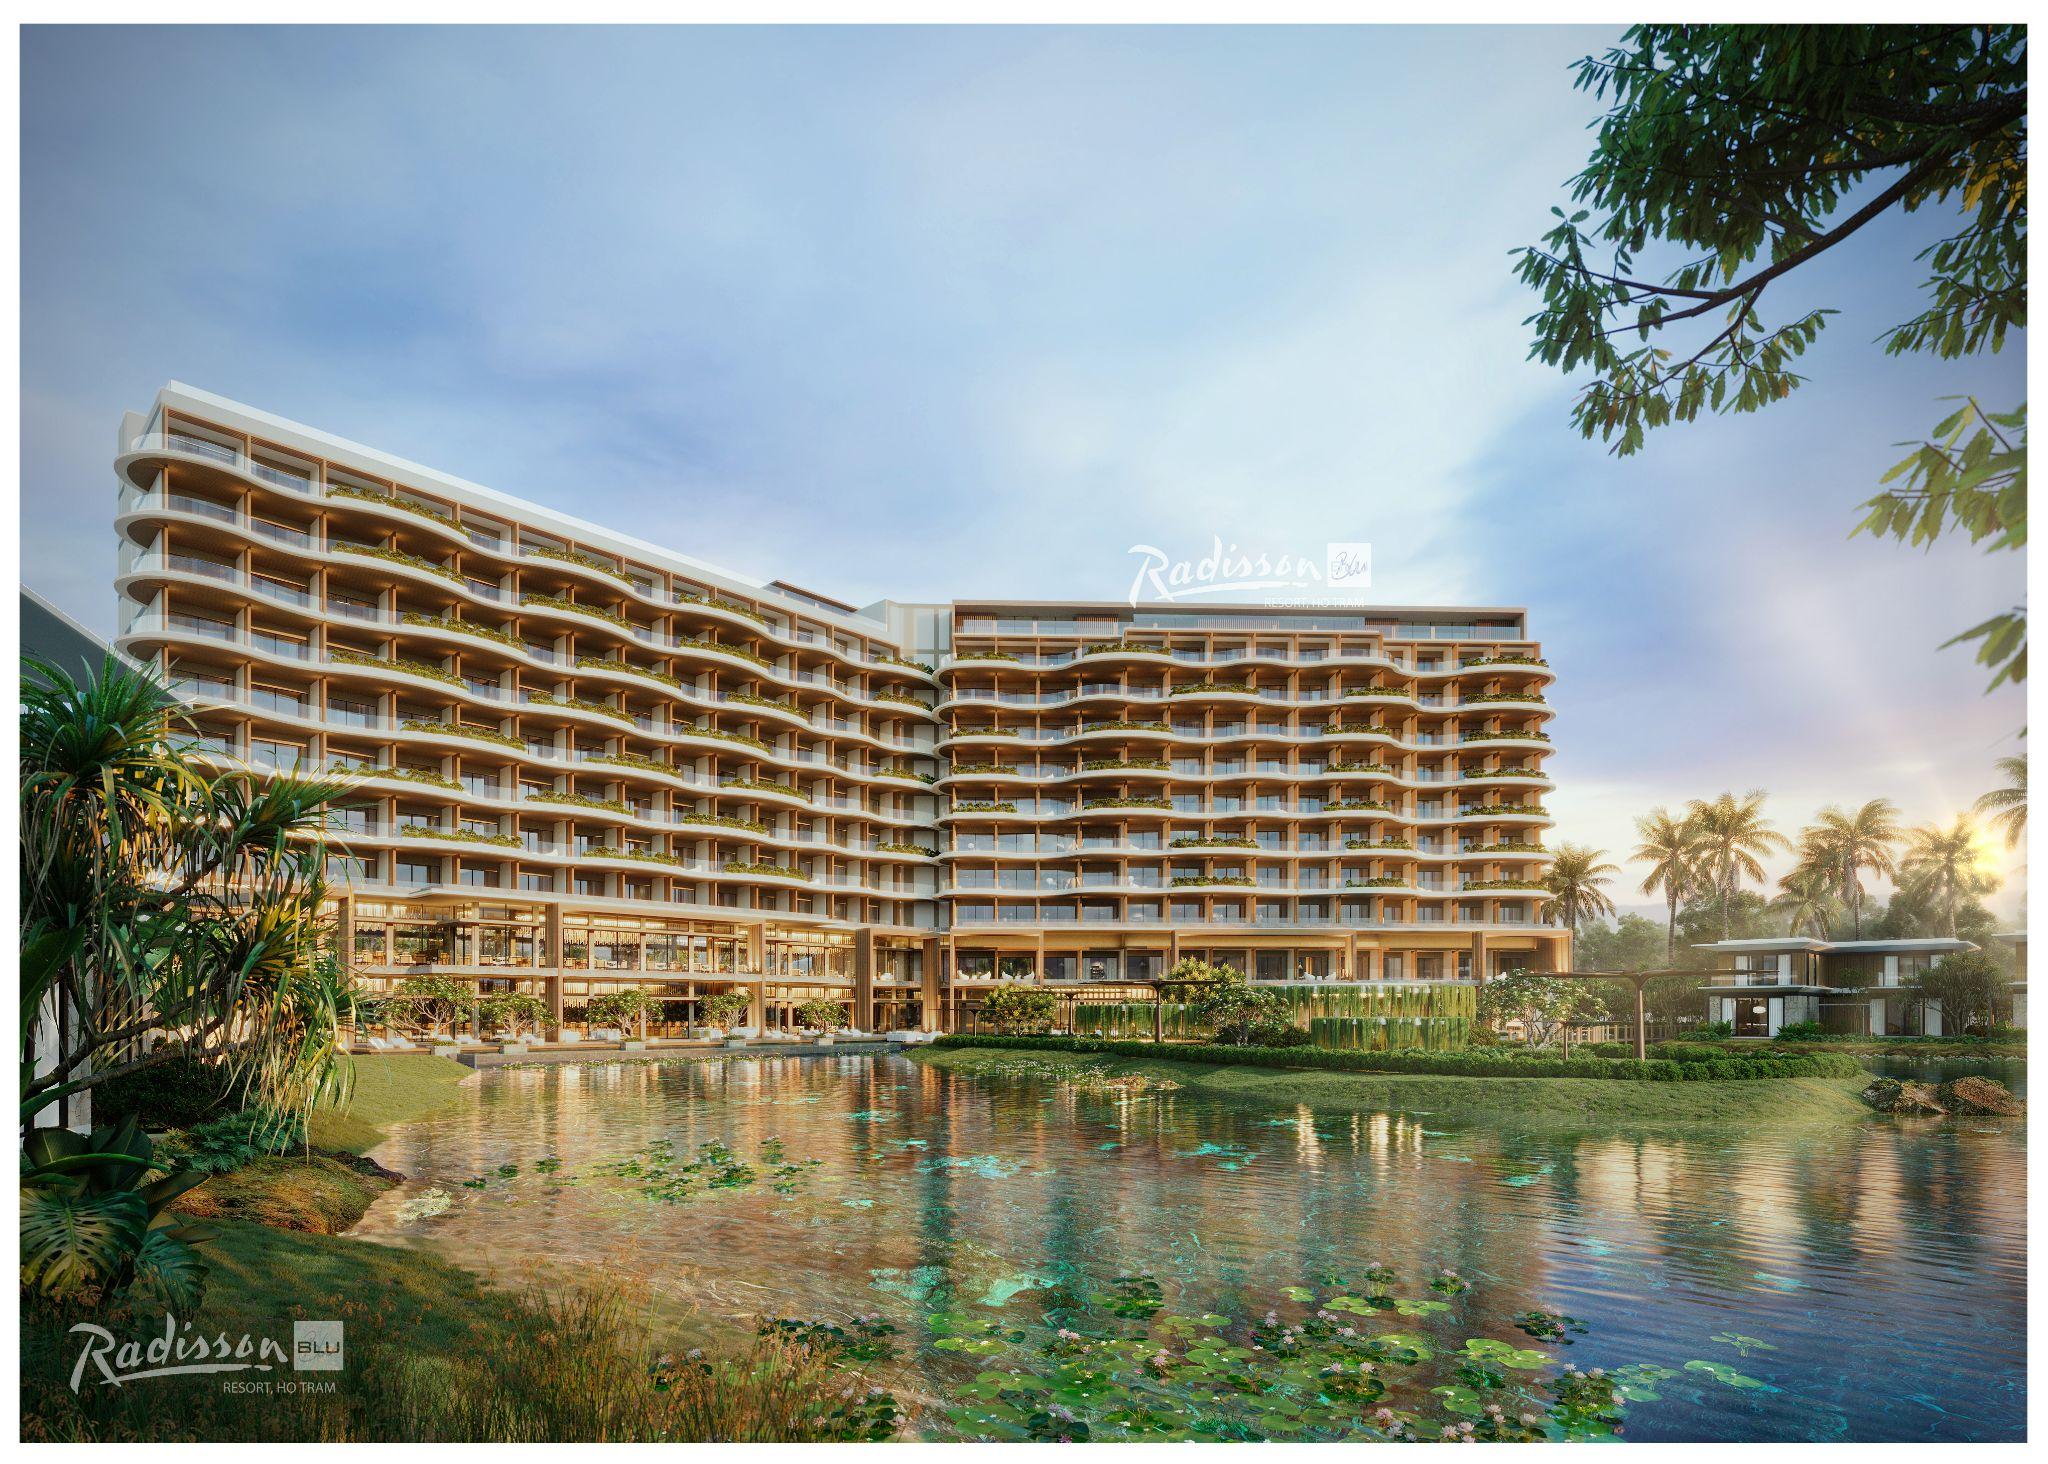 Hình ảnh đầu tiên của dự án Radisson Blu Resort, Hồ Tràm